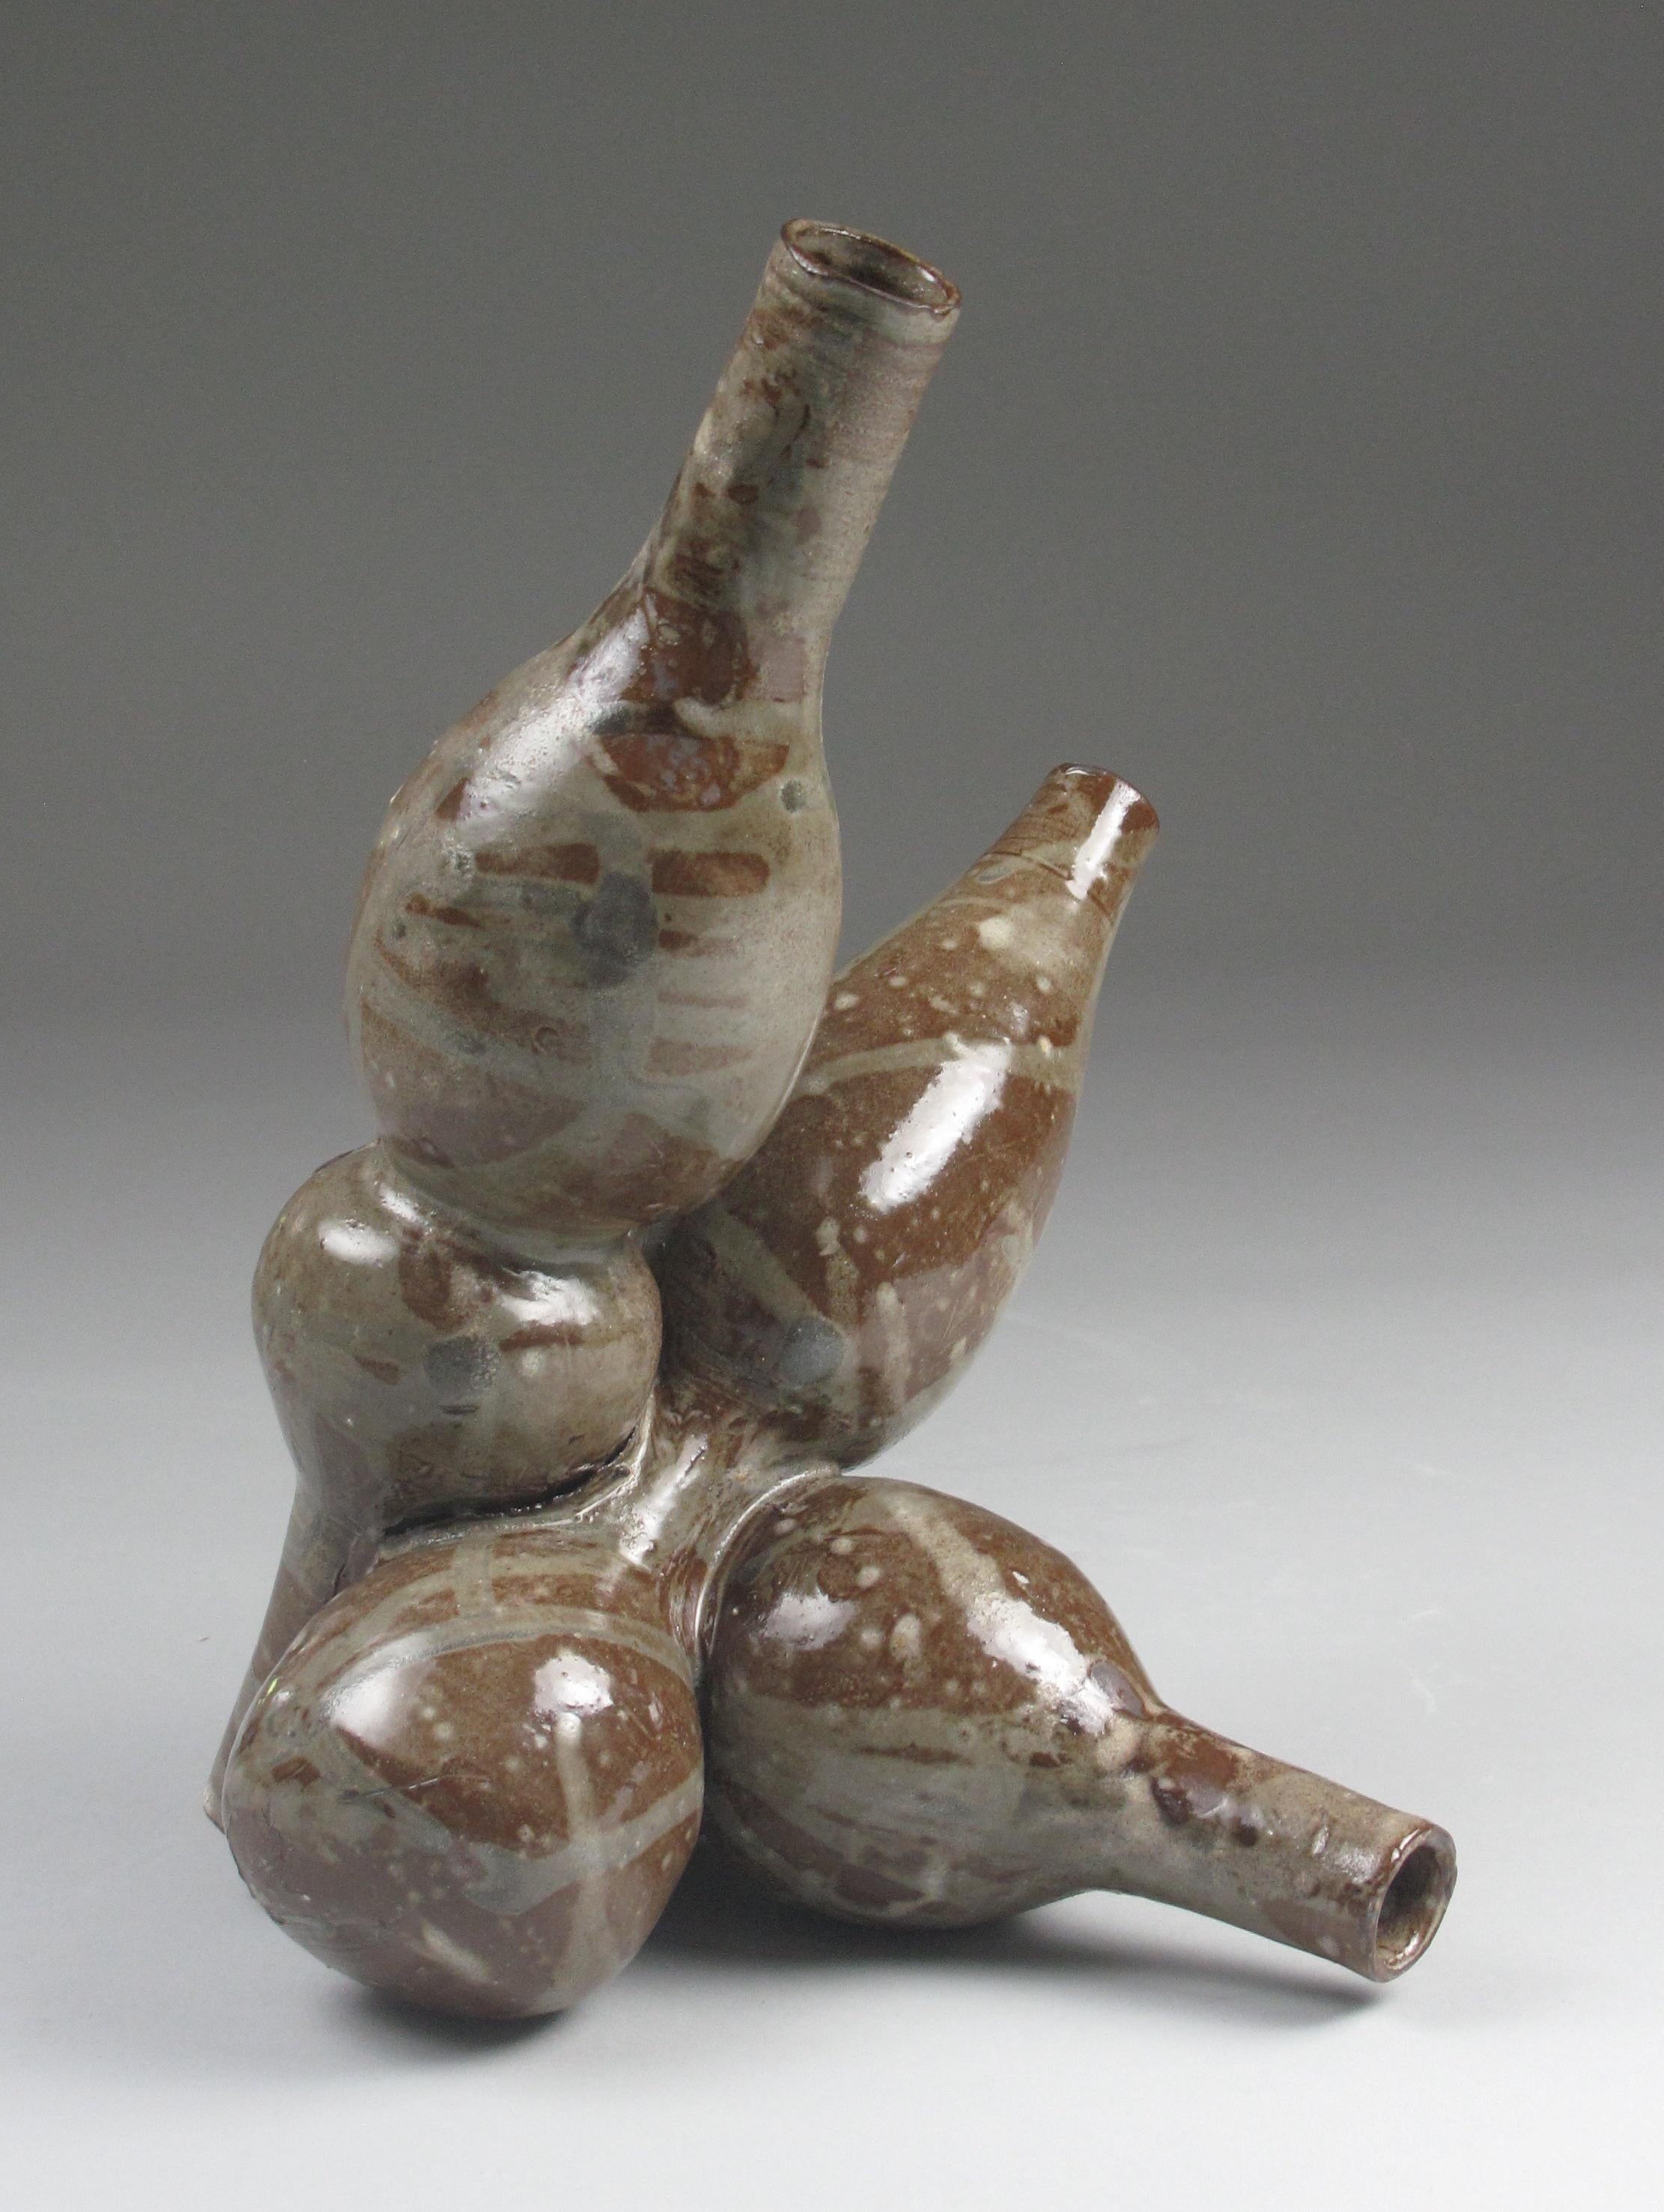 "Nestledrip", gestural, ceramic, sculpture, chocolate, brown, stoneware - Sculpture by Sara Fine-Wilson